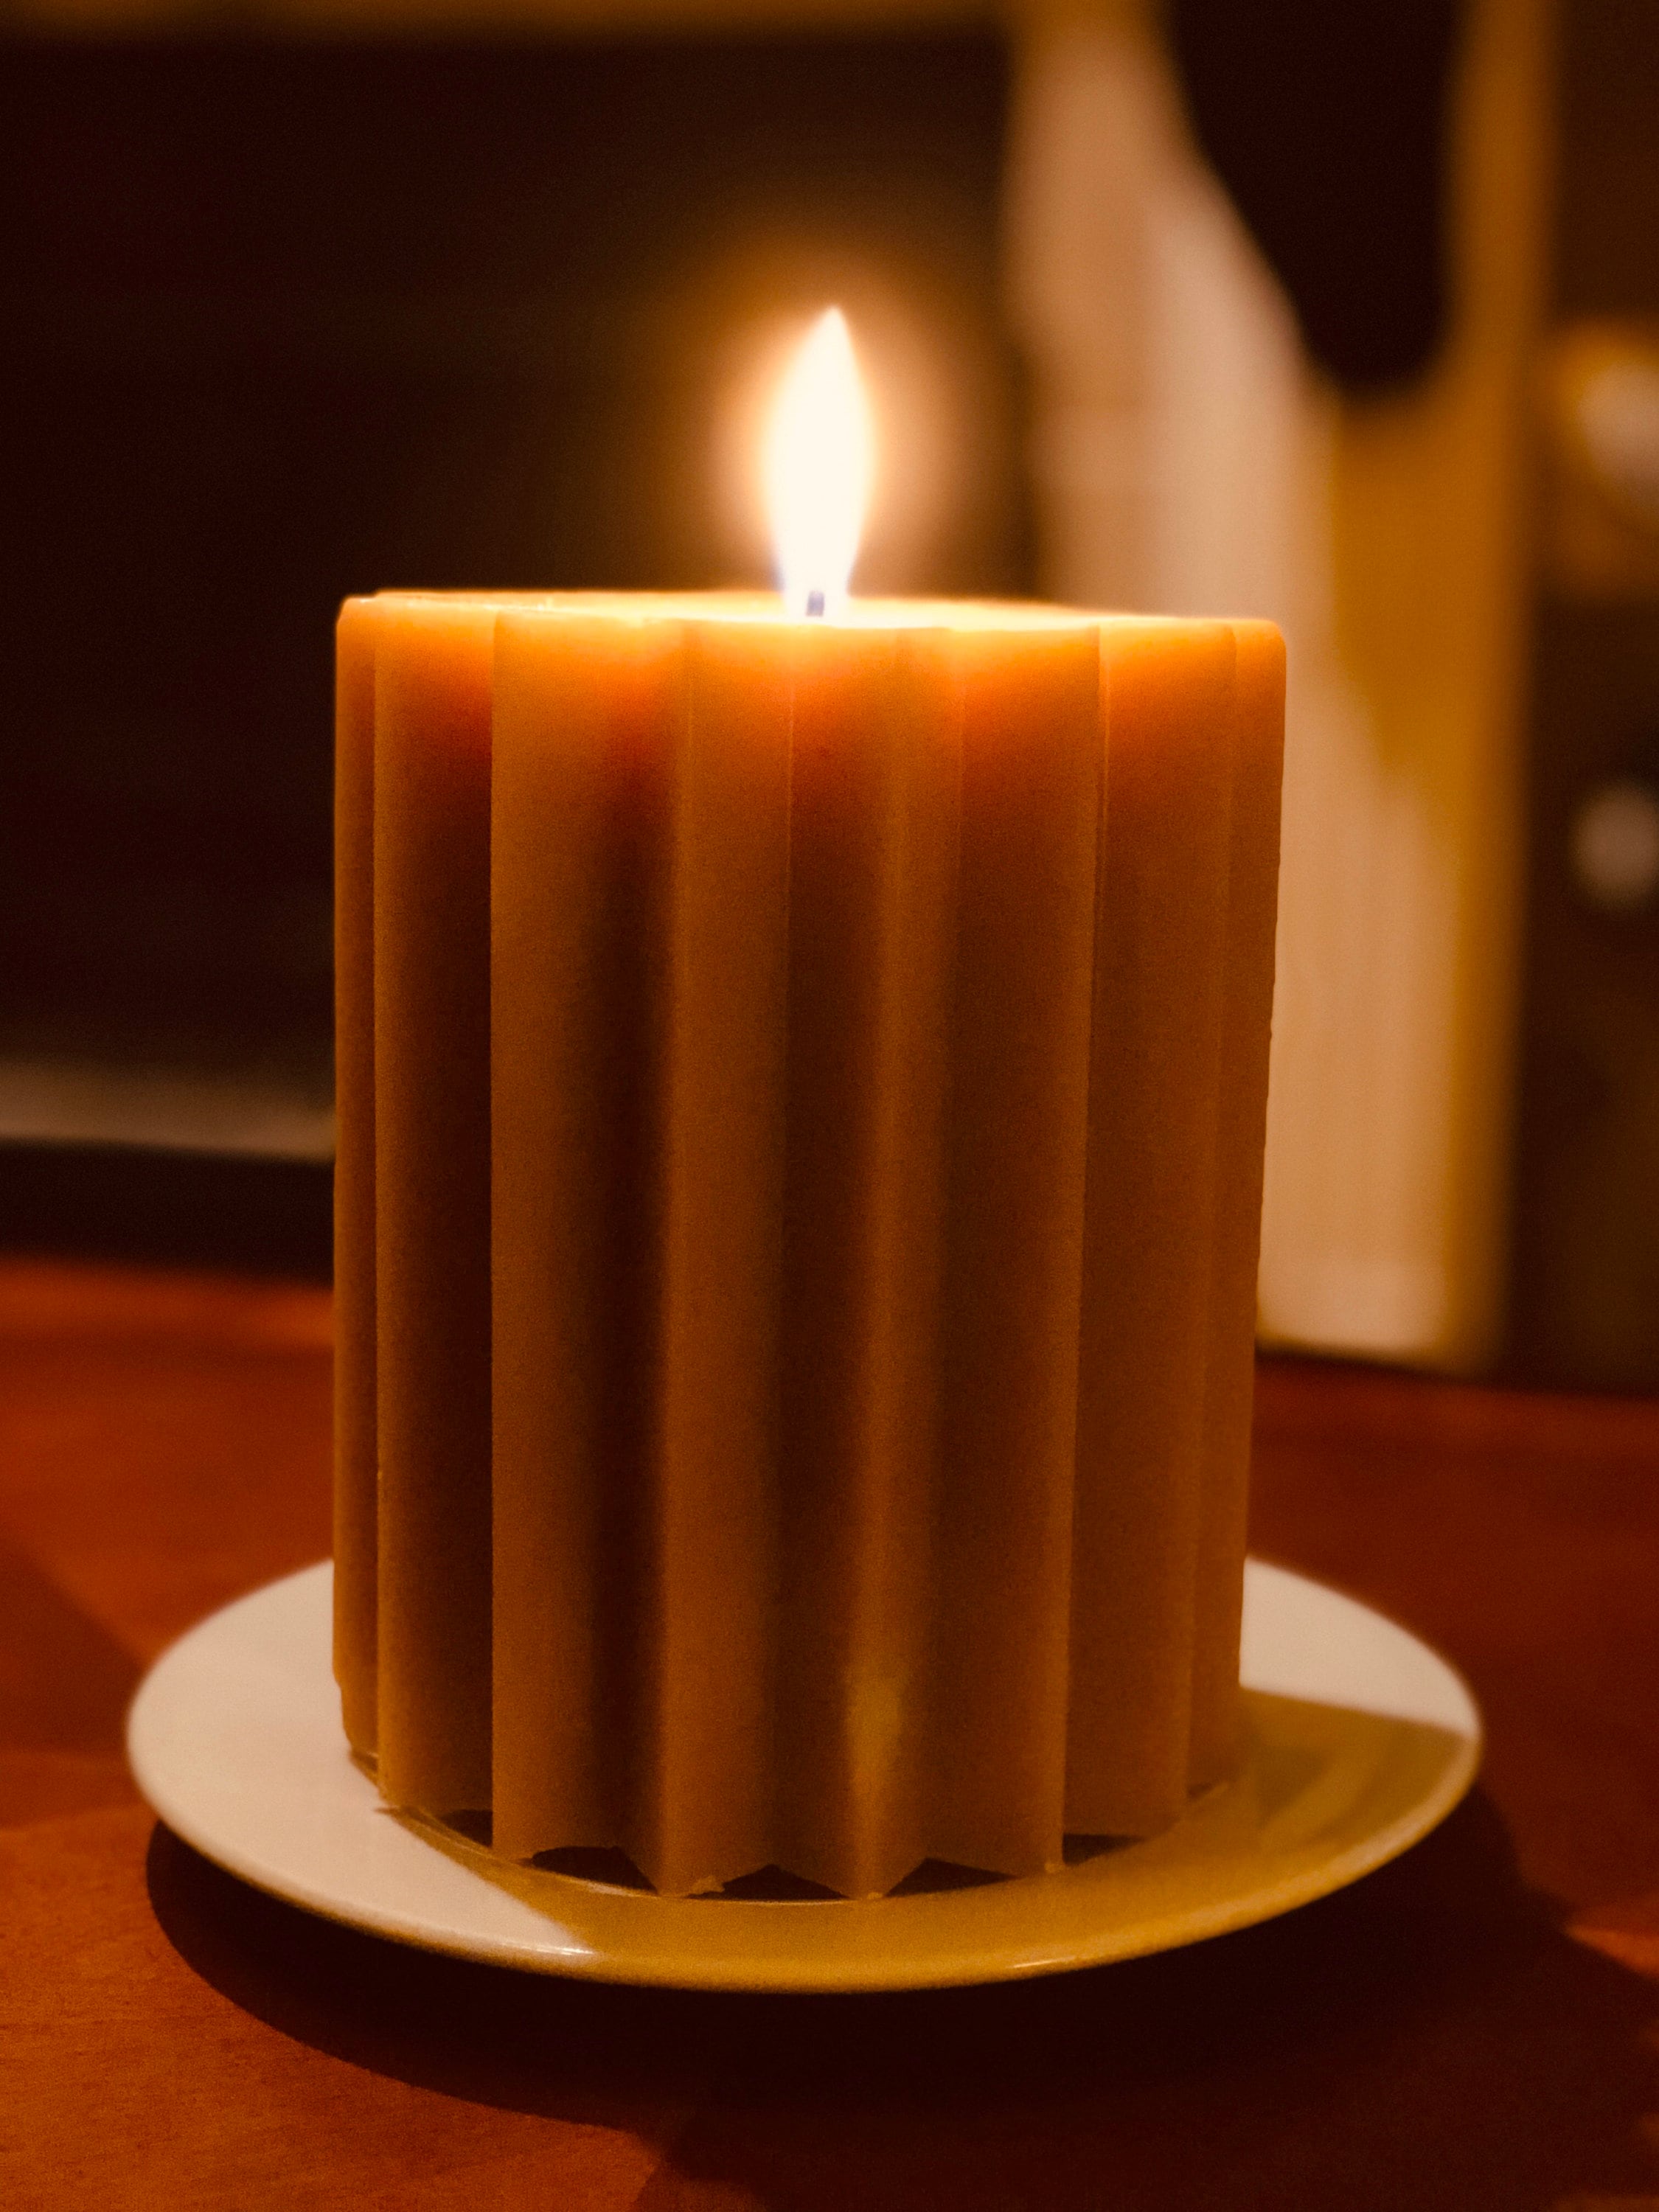 Beeswax Pillar Candles (Medium) — ~ Pure Raw Beeswax~ ~Casper Candles~